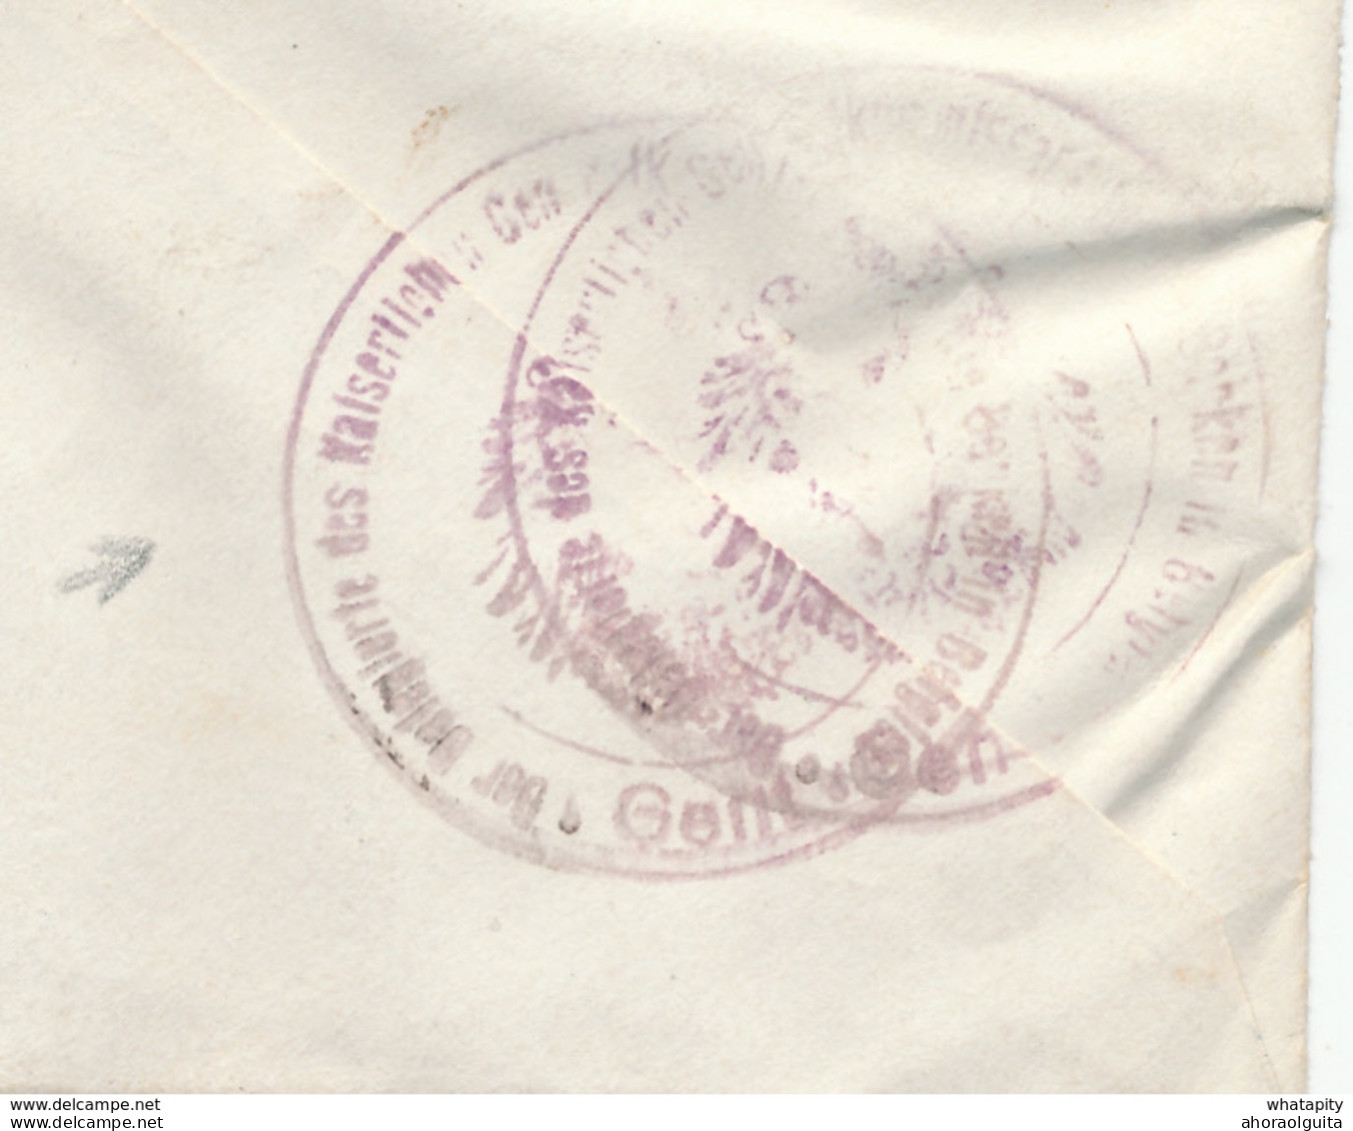 472/27 -- Lettre TP Germania Annulé Censure Des Etapes GENT 1917 - Entete Et Cachet Sucrerie De MOERBEKE Waes - OC26/37 Territoire Des Etapes